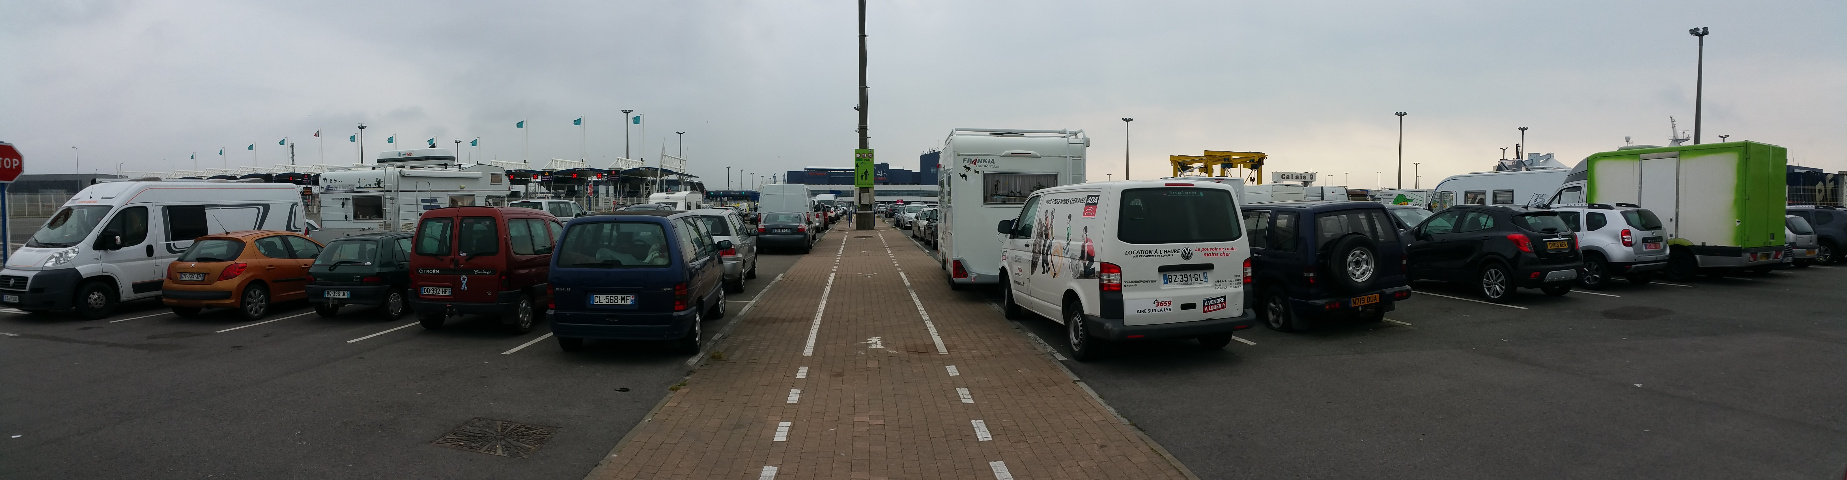  Parkeren en overnachting in de haven van Calais, tegenover terminal.